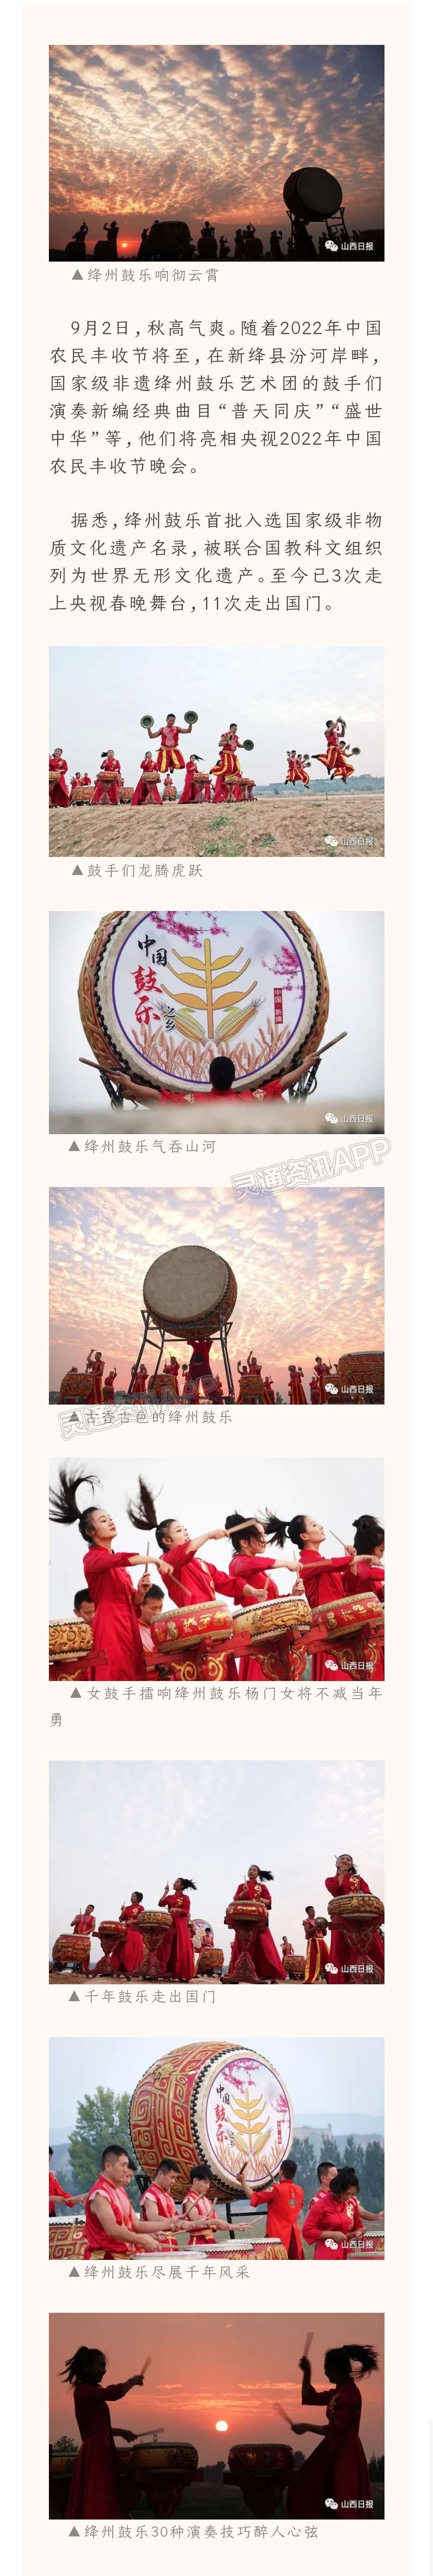 【米乐M6官网】期待！绛州鼓乐艺术团将亮相央视2022年中国农民丰收节晚会